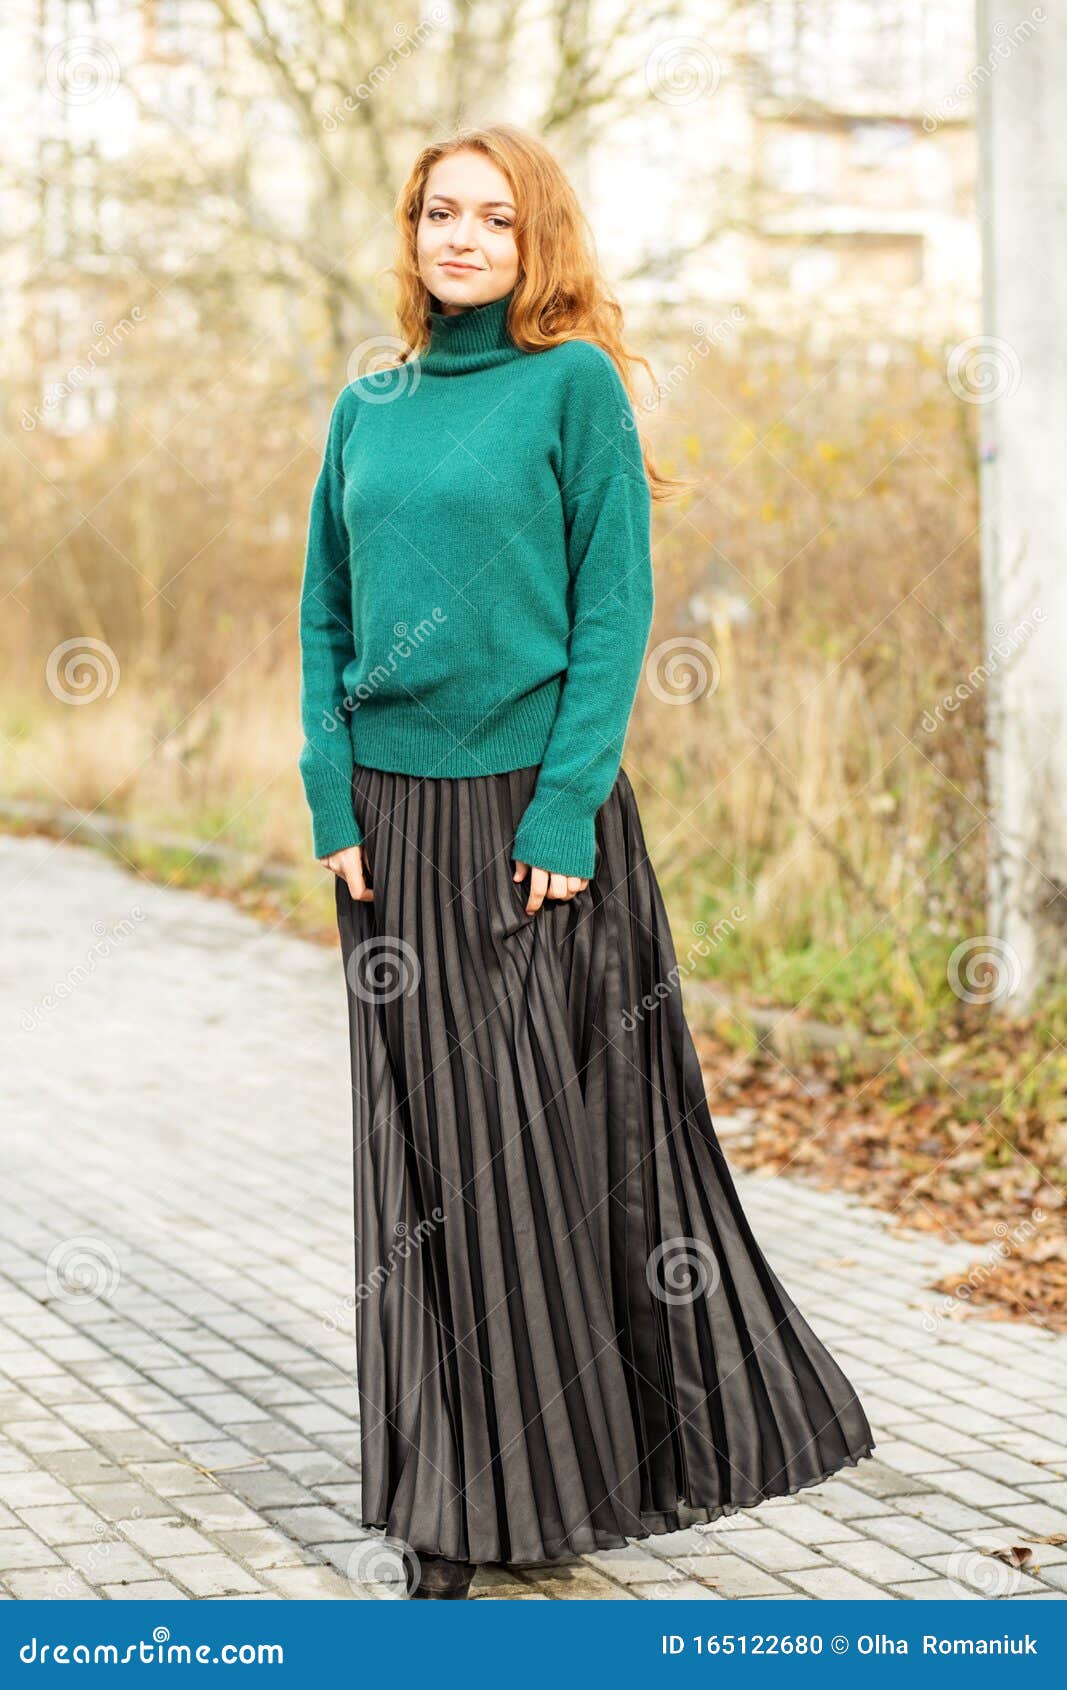 Hermosa Mujer Con Falda Plisada Y Un Jersey Verde El Concepto De Estilo Y Moda, Estilo De Vida Foto de archivo - Imagen modelo, encantador: 165122680